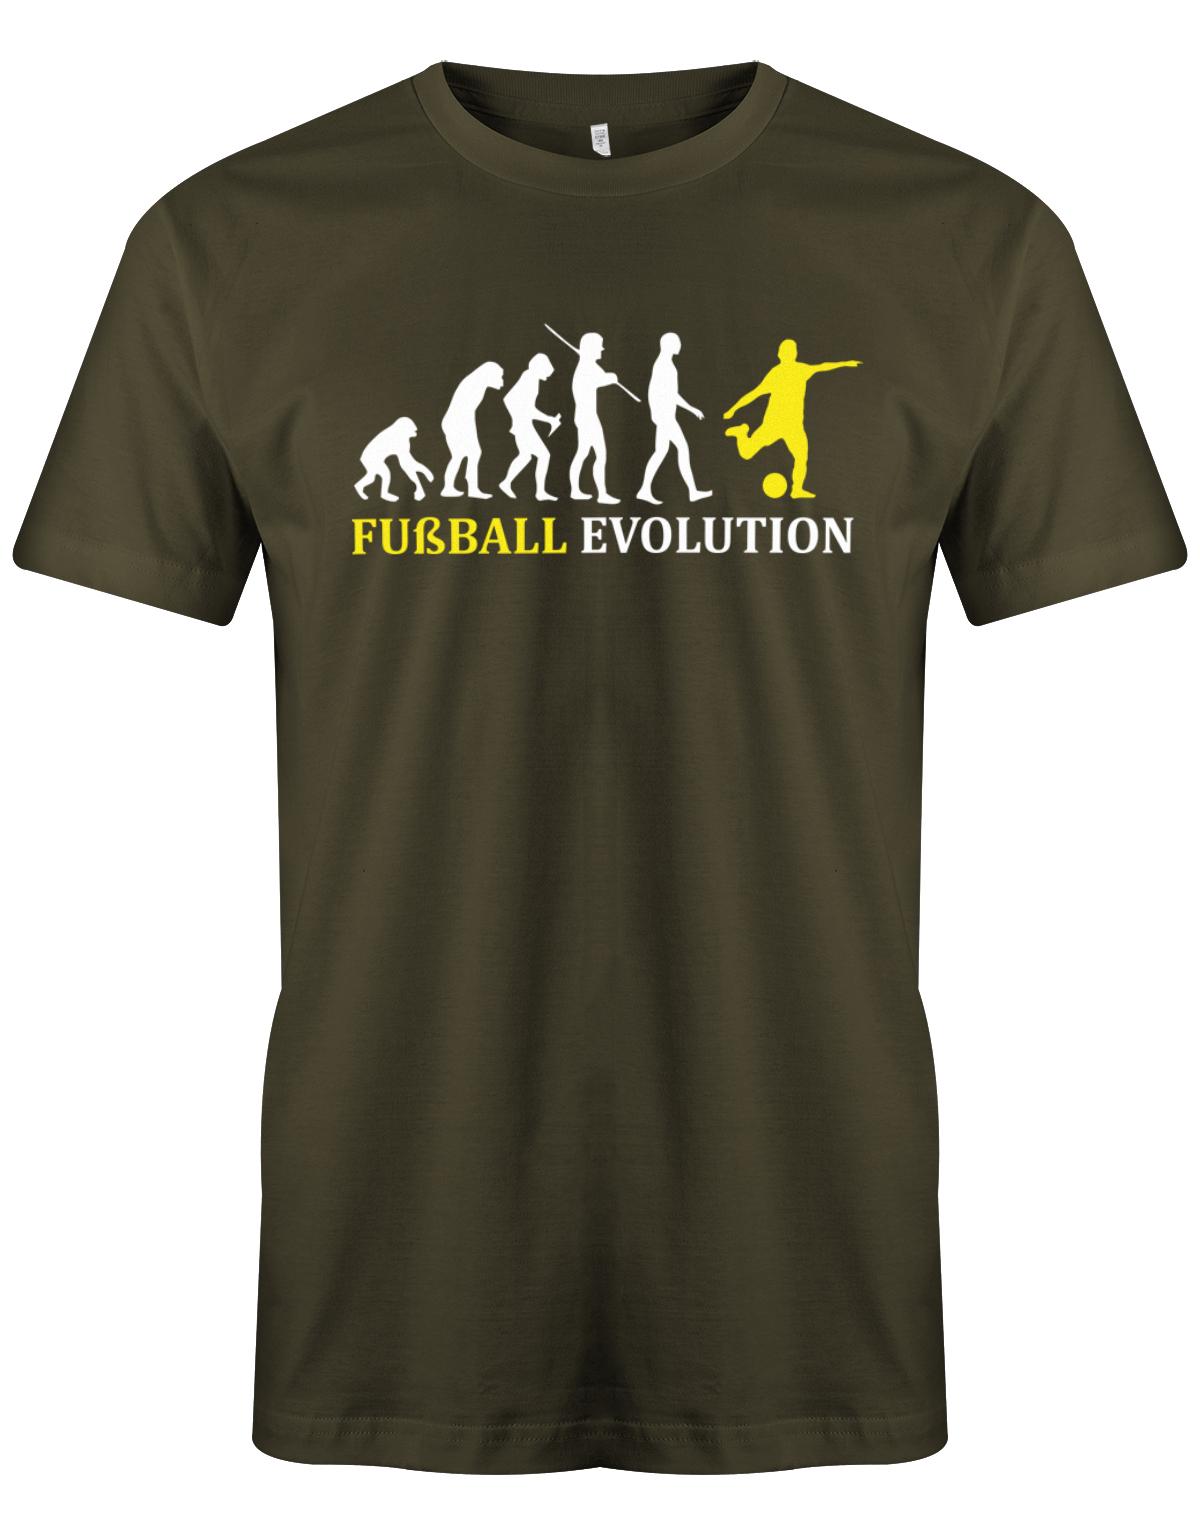 Fussball-Evolution-Herren-Shirt-Army-Gelb